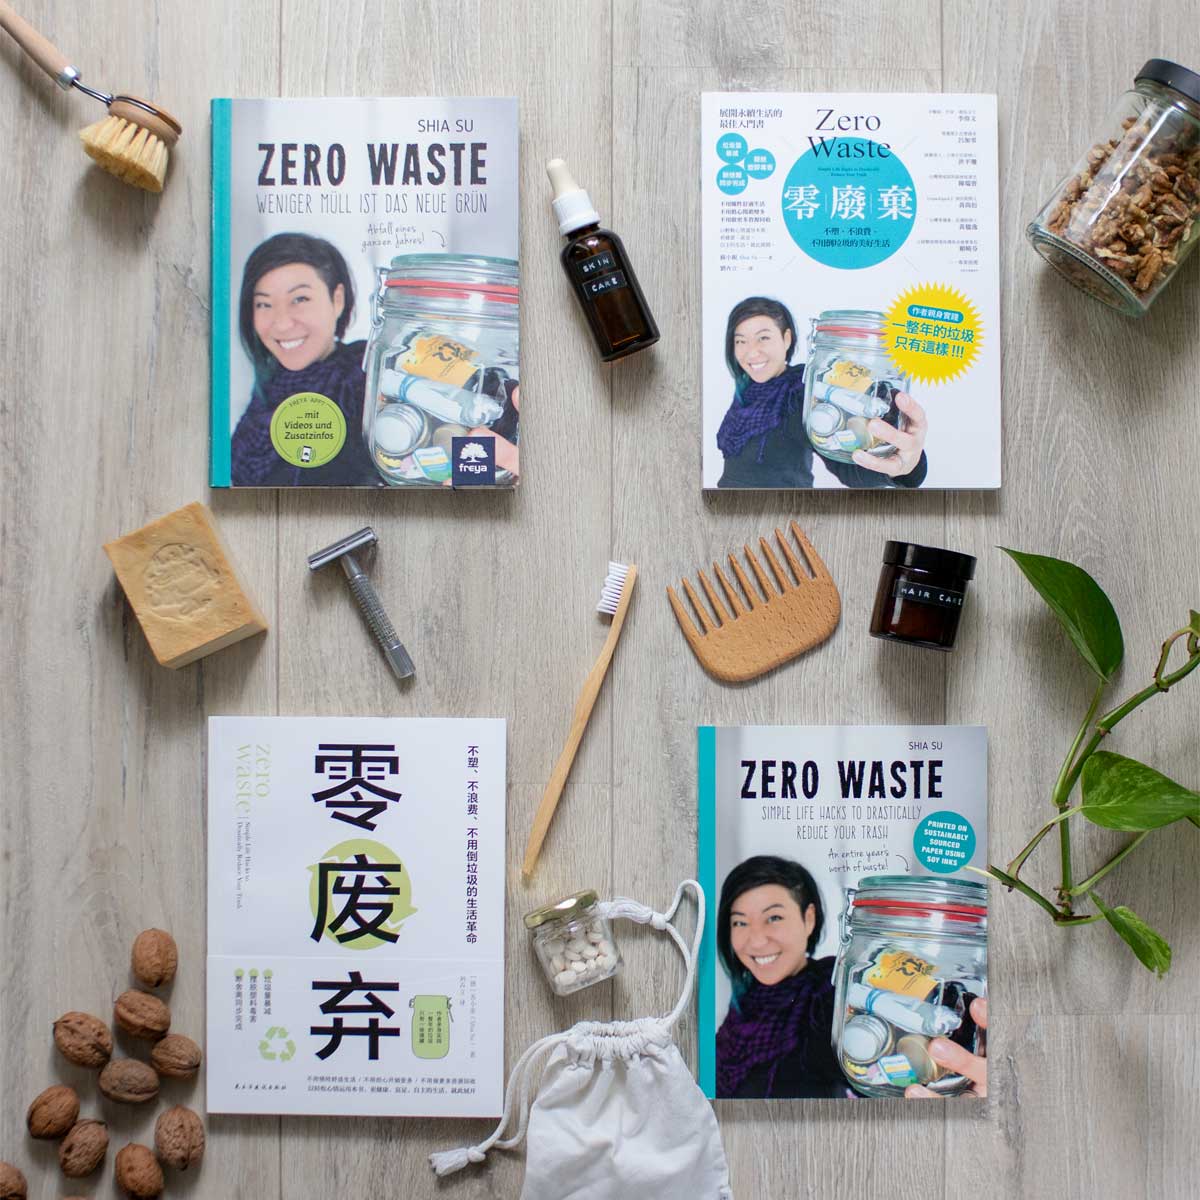 Das Buch "Zero Waste" von Shia Su auf Deutsch, Englisch, Chinesisch (Langzeichen) und Chinesisch (Kurzzeichen)